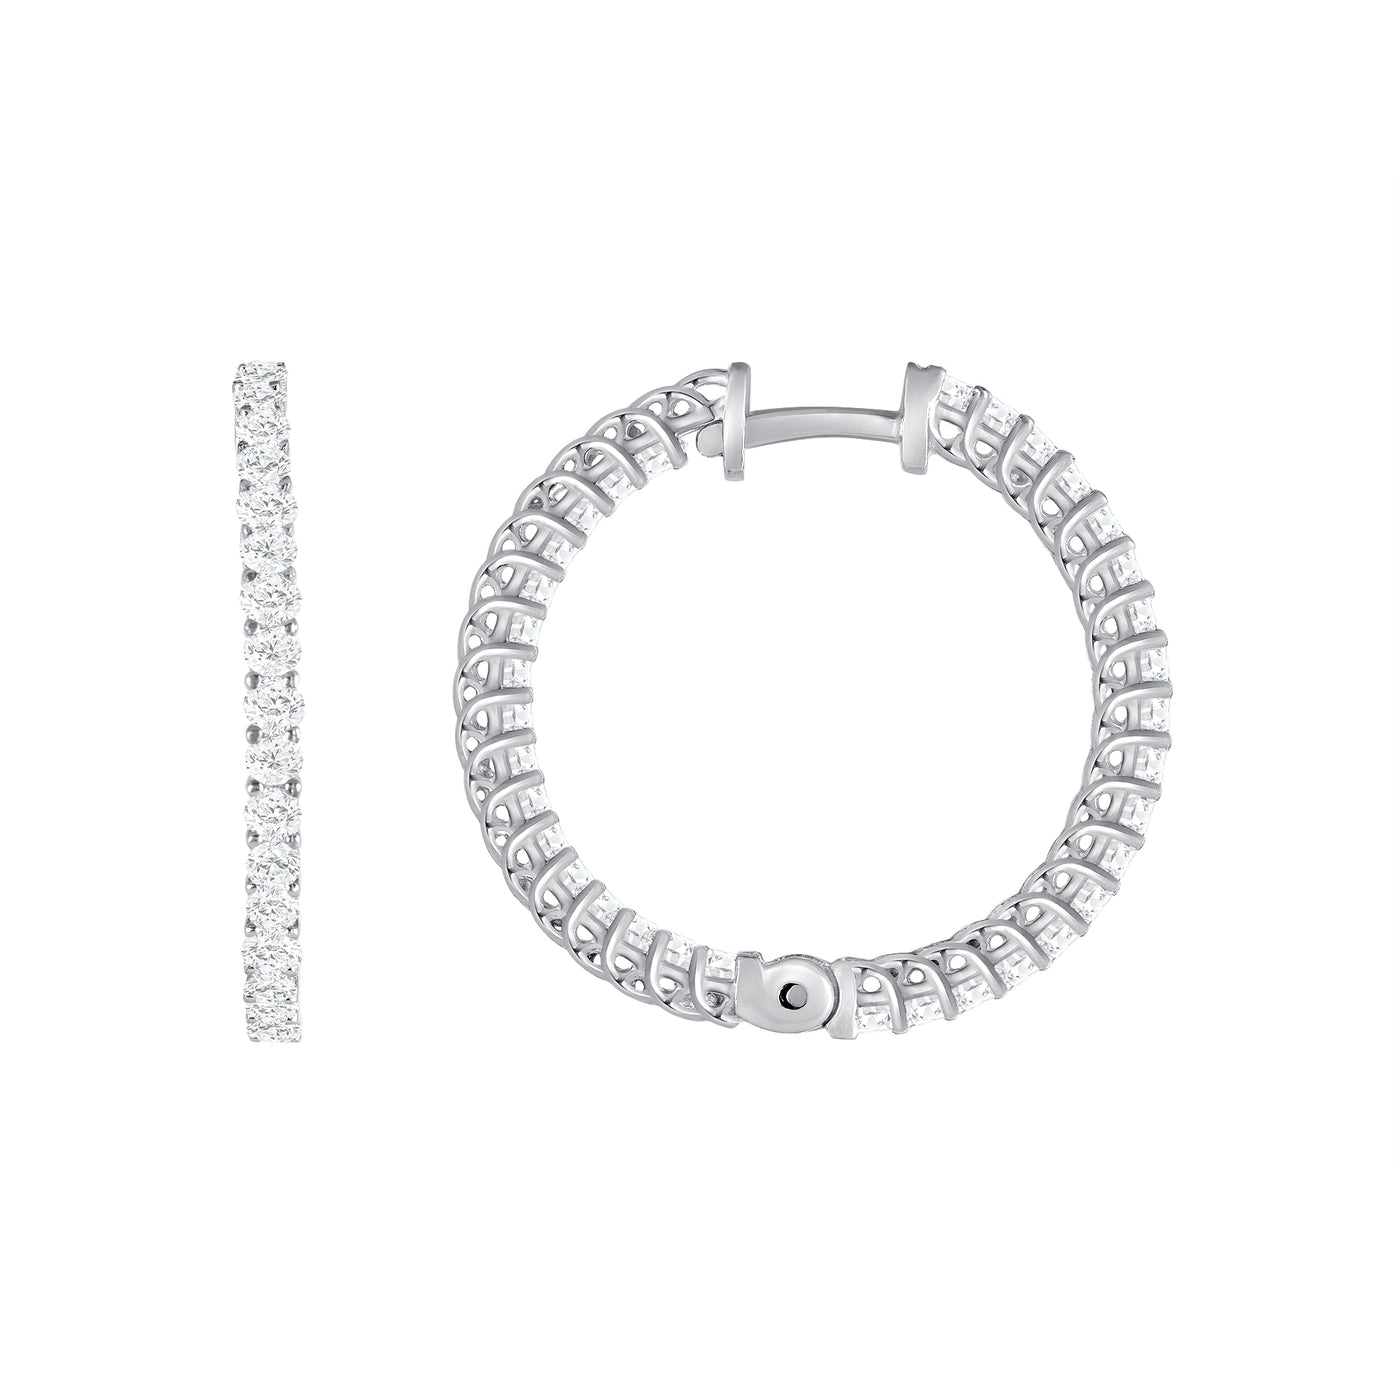 1 1/2 Carat Round Cut Inside Out Diamond Hoop Earrings